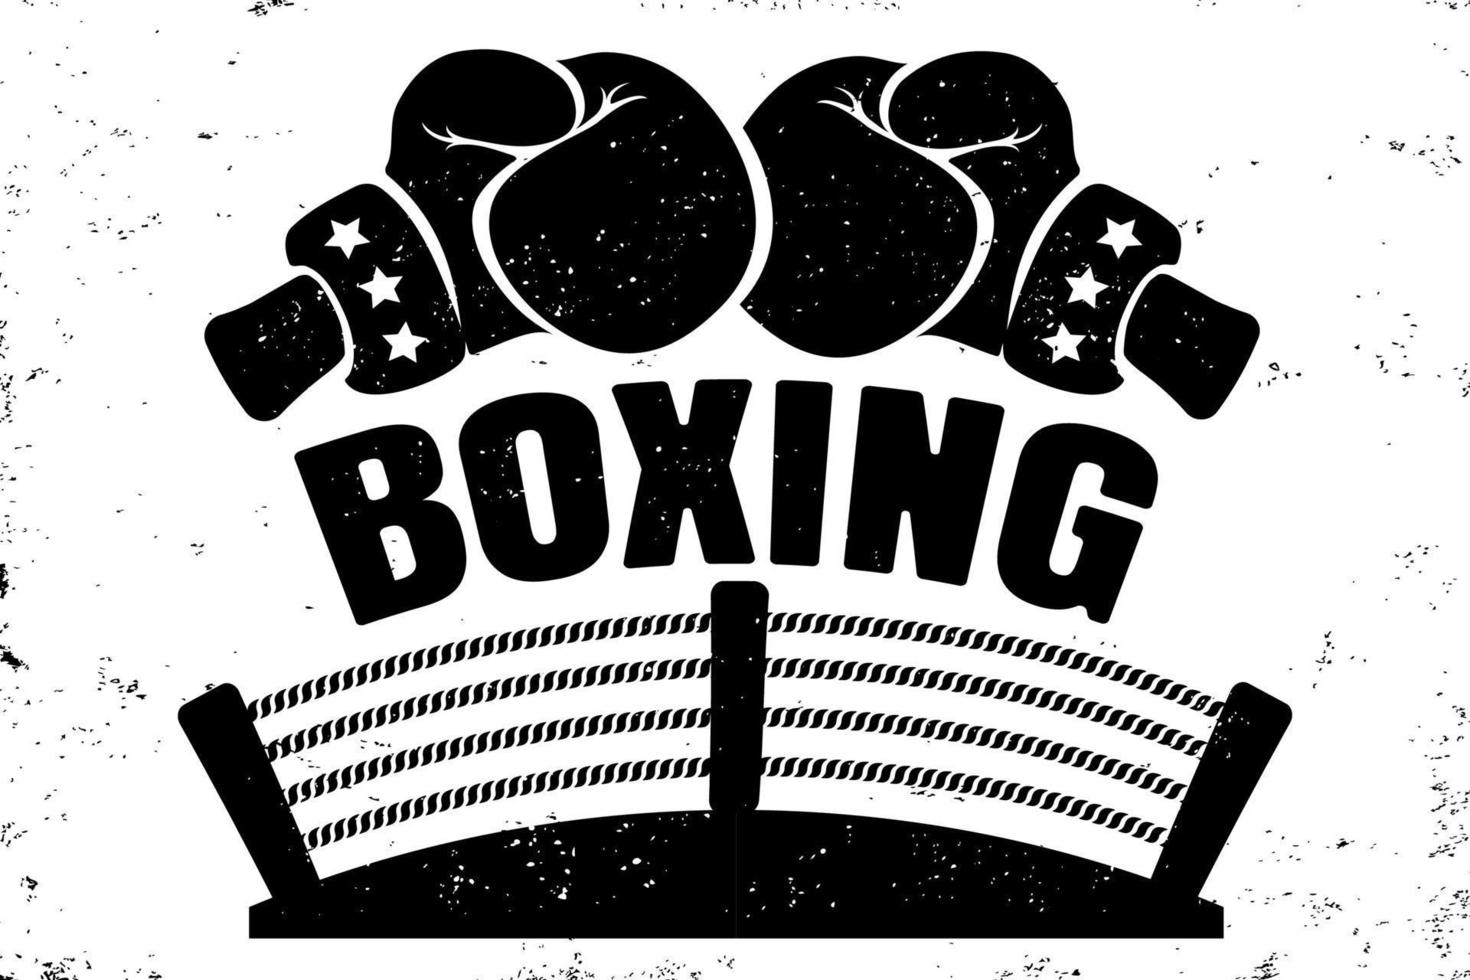 Retro emblem for boxing vector